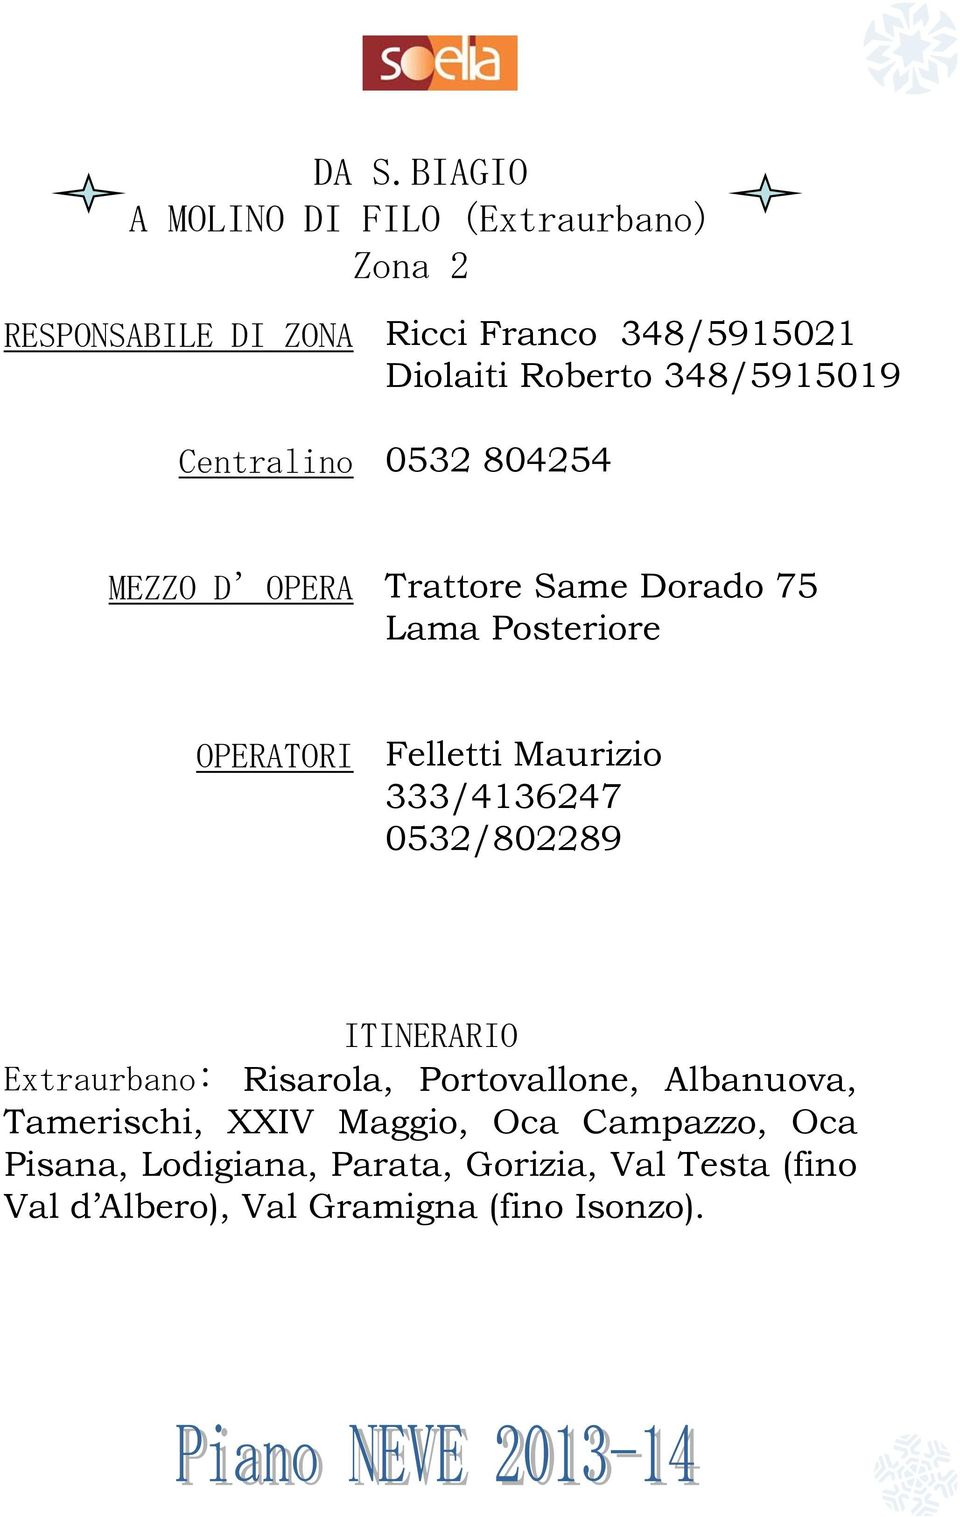 Risarola, Portovallone, Albanuova, Tamerischi, XXIV Maggio, Oca Campazzo, Oca